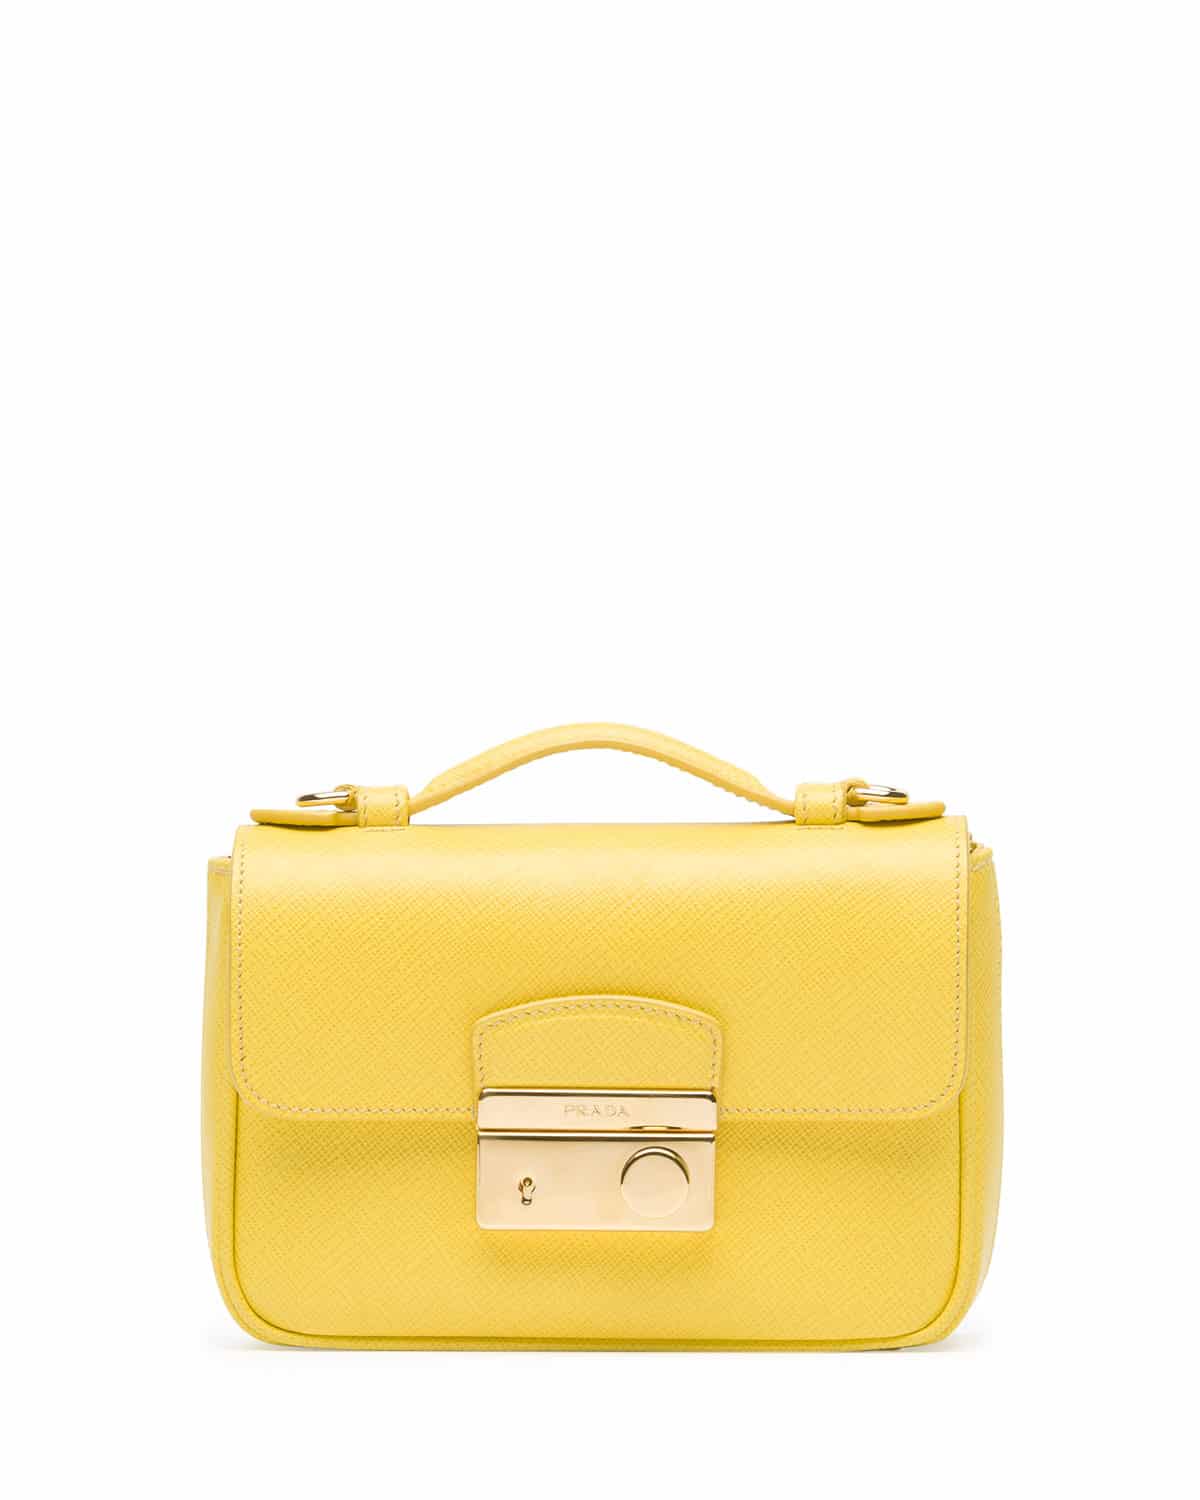 Prada Saffiano Mini Bag Reference Guide | Spotted Fashion